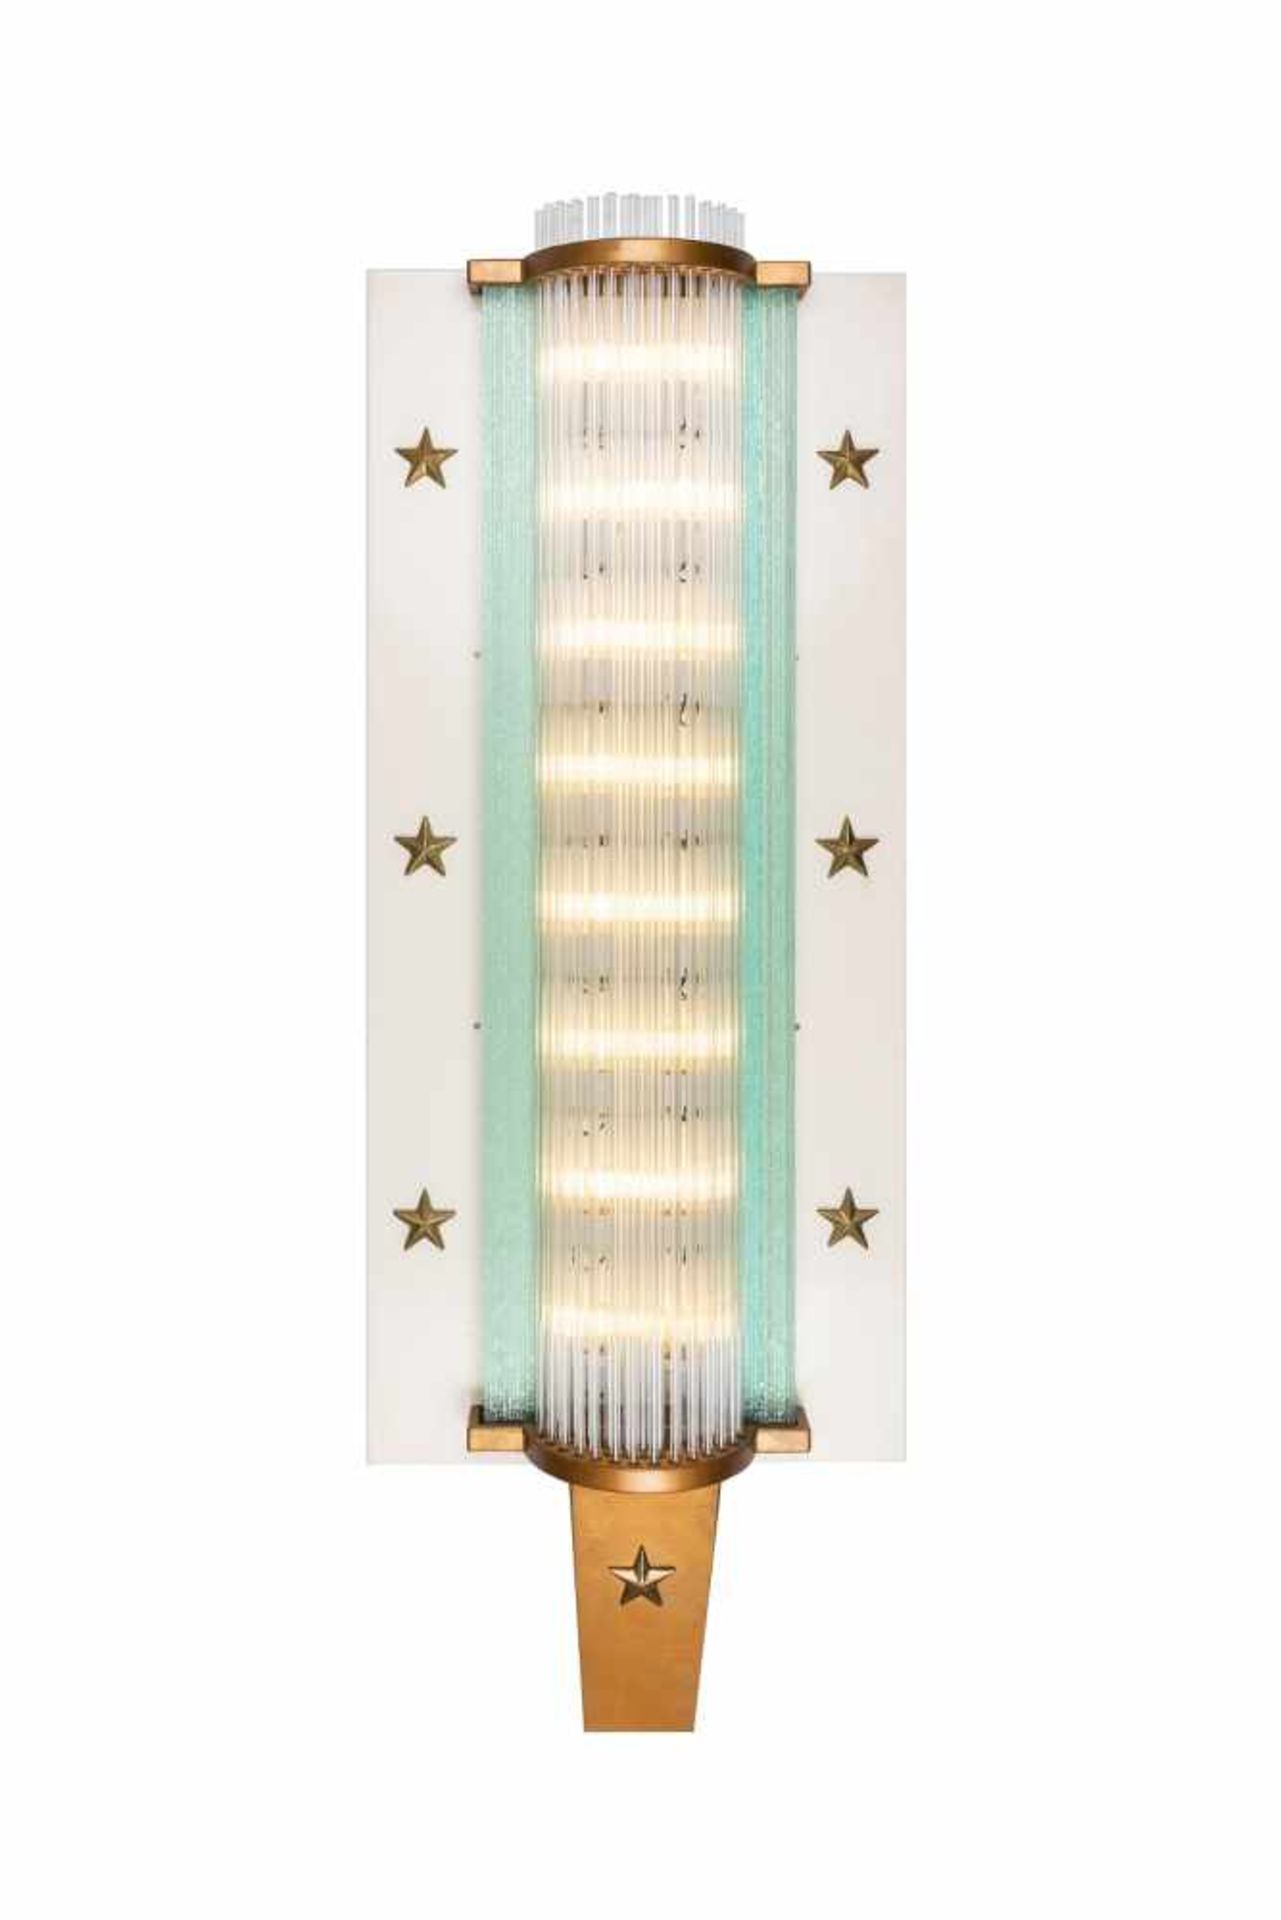 AußenlampeAußenlampe des legendären „CLUB BINGO“ in LAS VEGAS, 1959, Maße: H 164 x 60 x 25